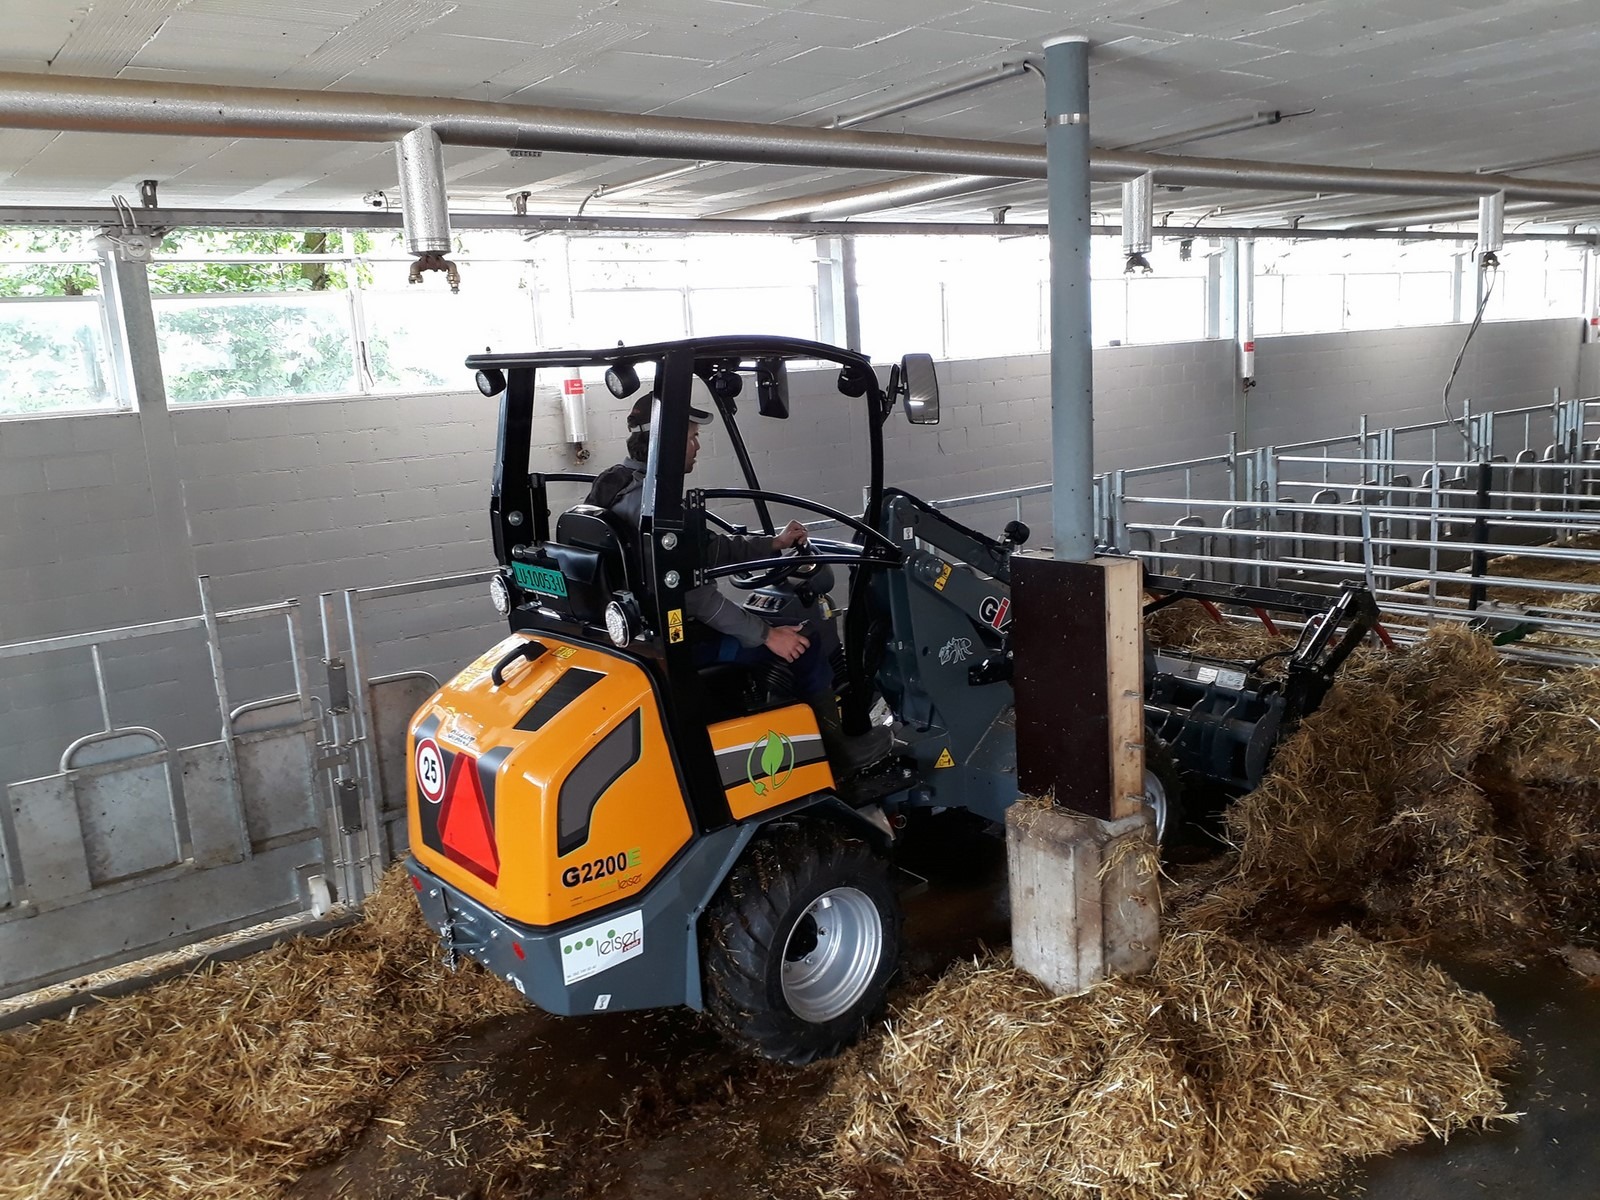 Nettoyage d'un enclos étroit à bétail dans une ferme grâce à la CHARGEUSE GIANT G2200E électrique.